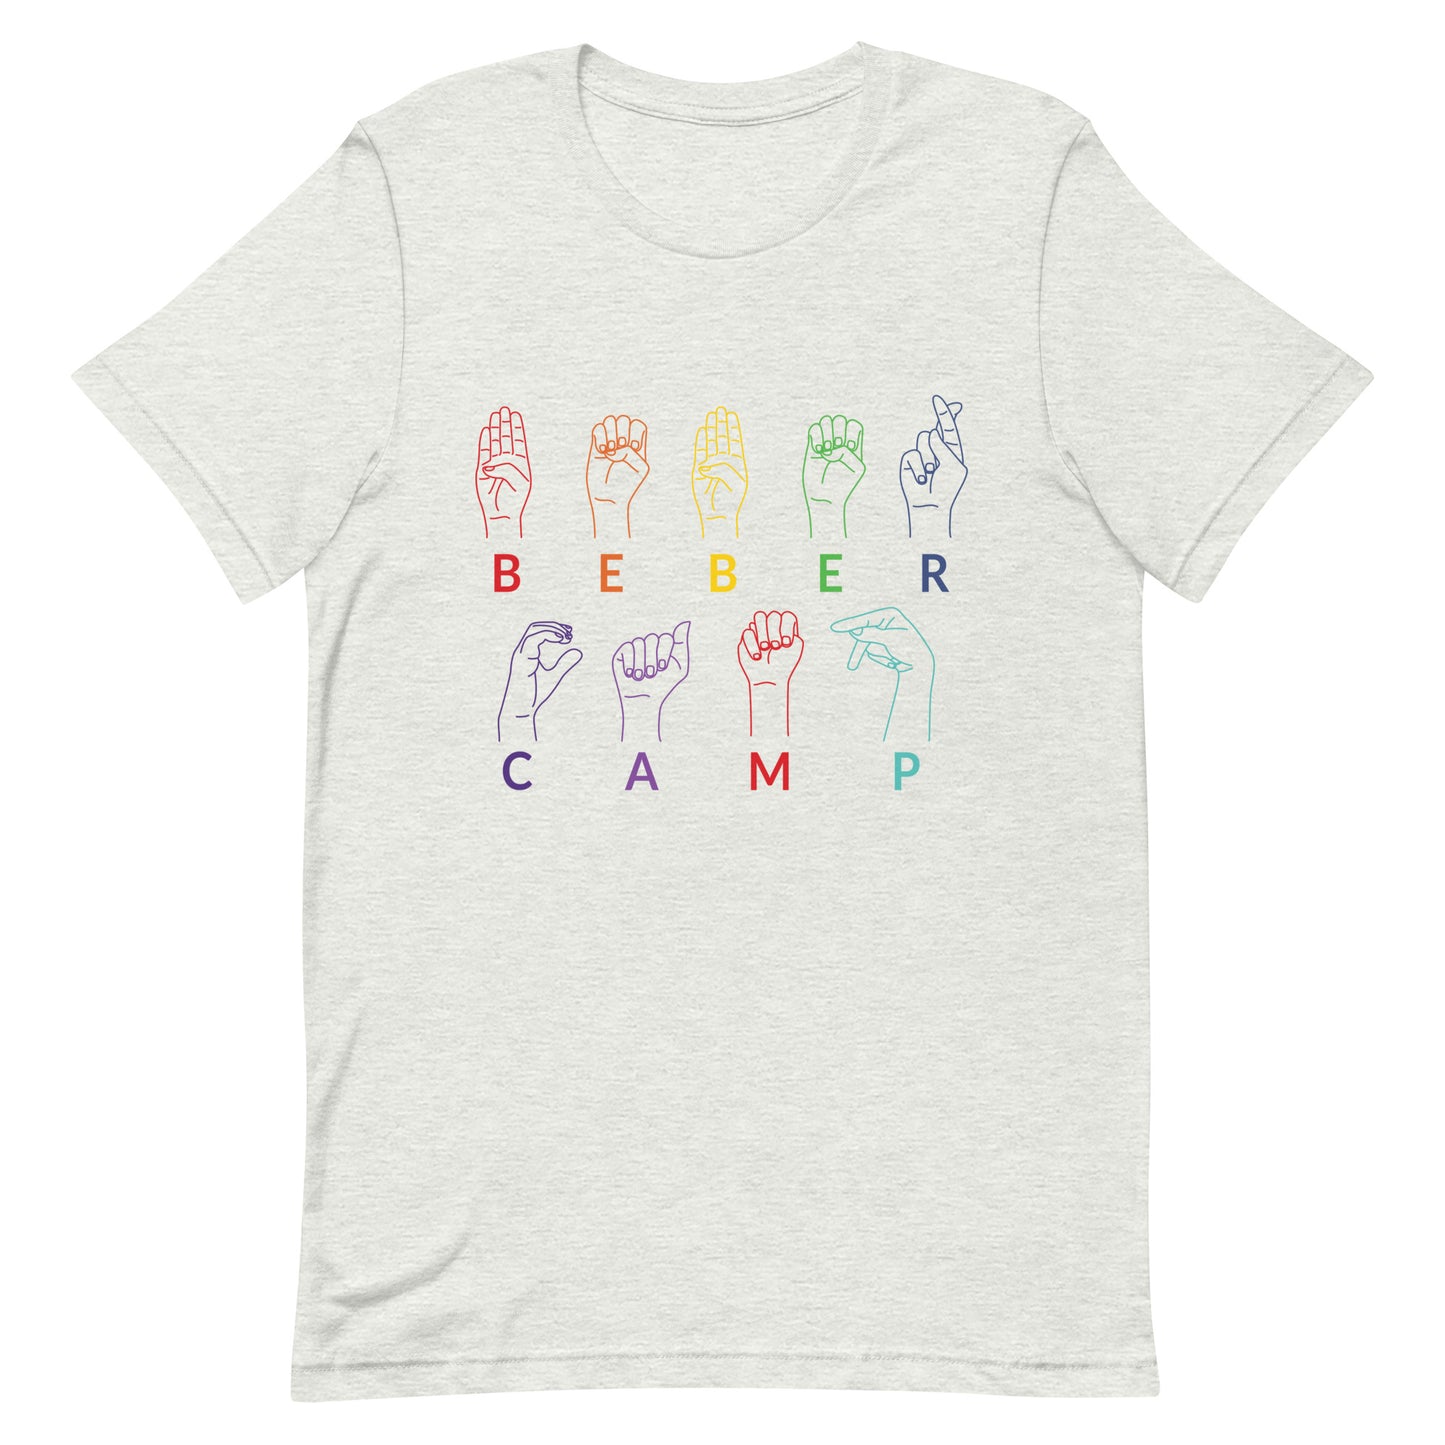 Beber Camp ASL Adult Unisex t-shirt